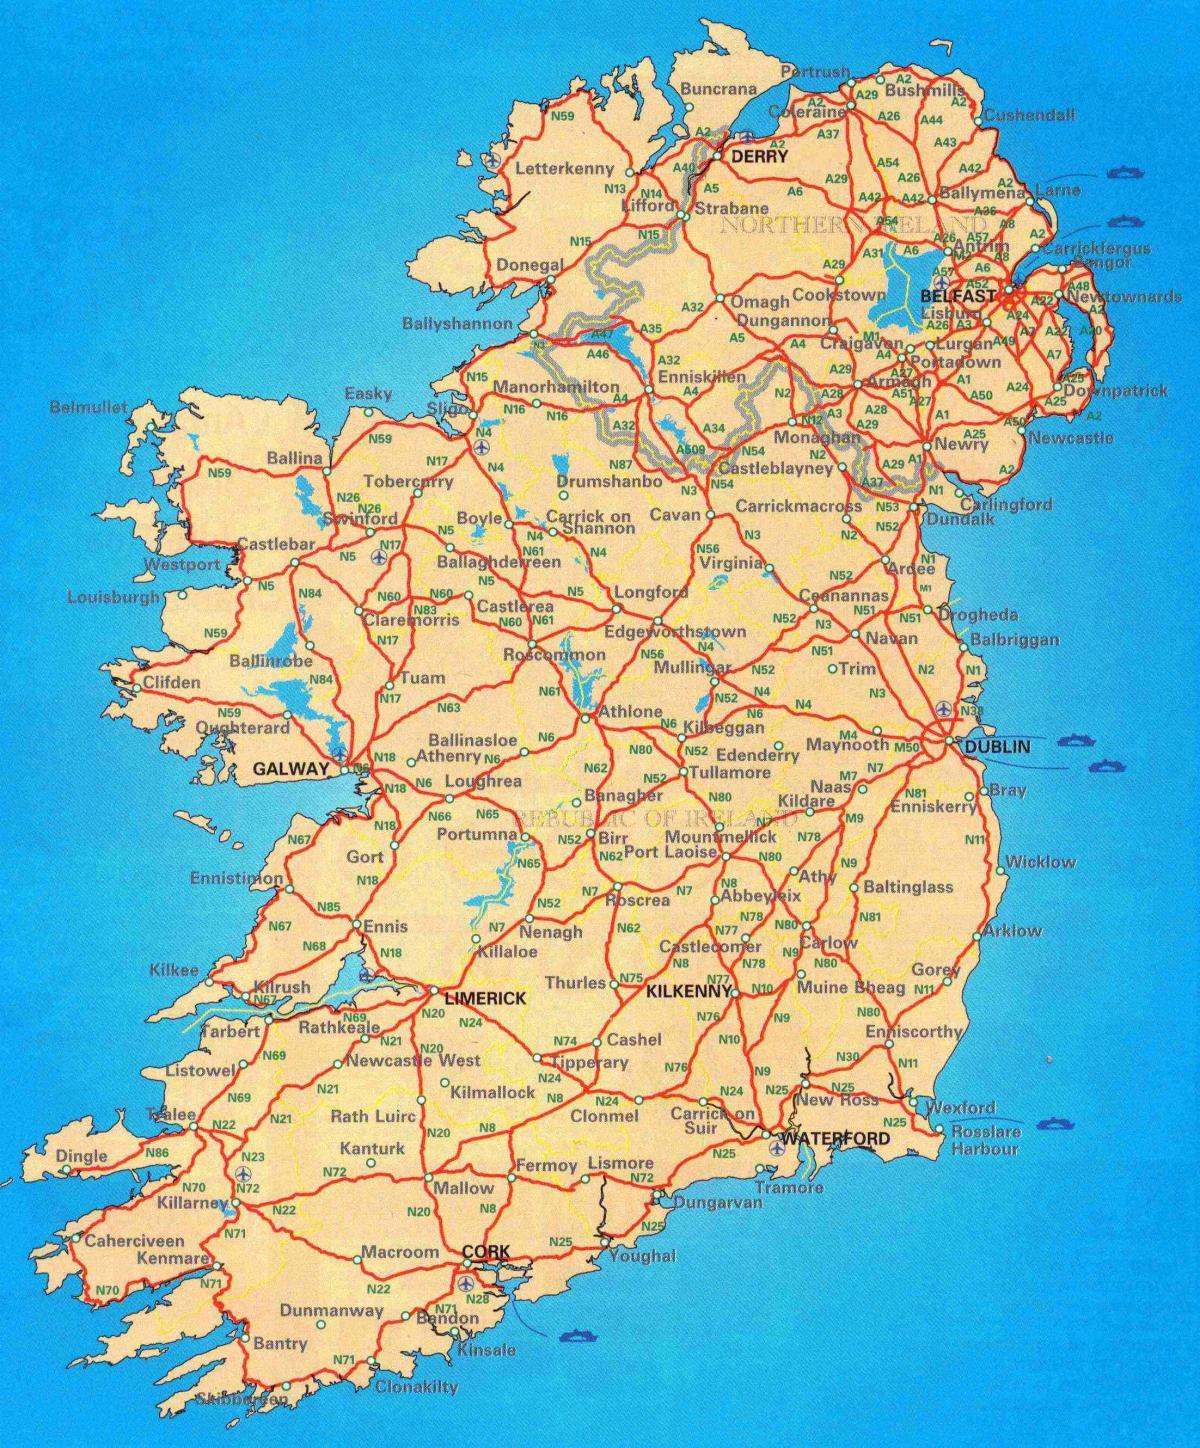 δωρεάν οδικός χάρτης της ιρλανδίας